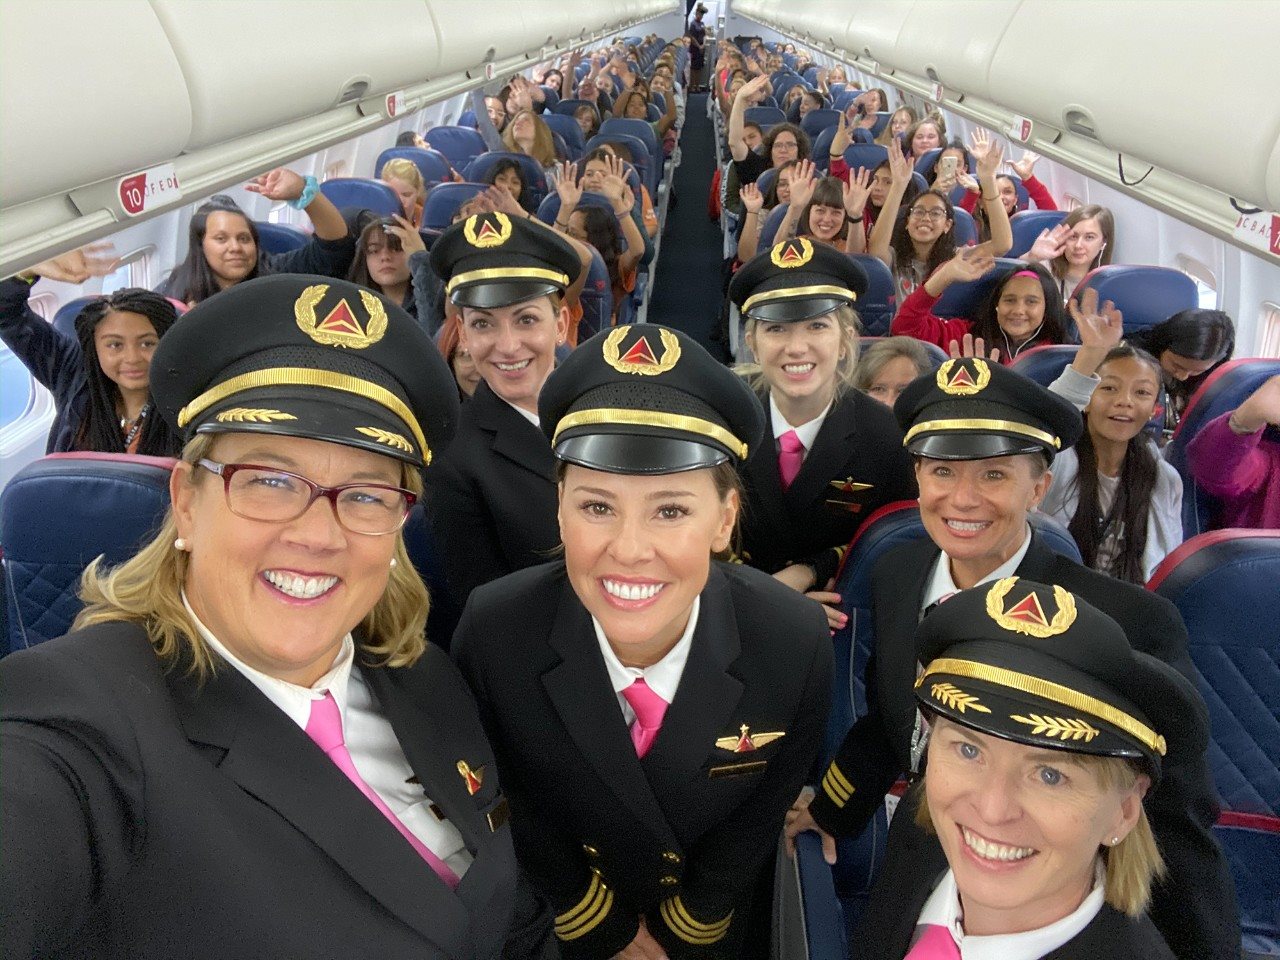 Planejado e executado exclusivamente por mulheres, o voo WING teve início em 2015 com o intuito de promover a igualdade de gênero na aviação.